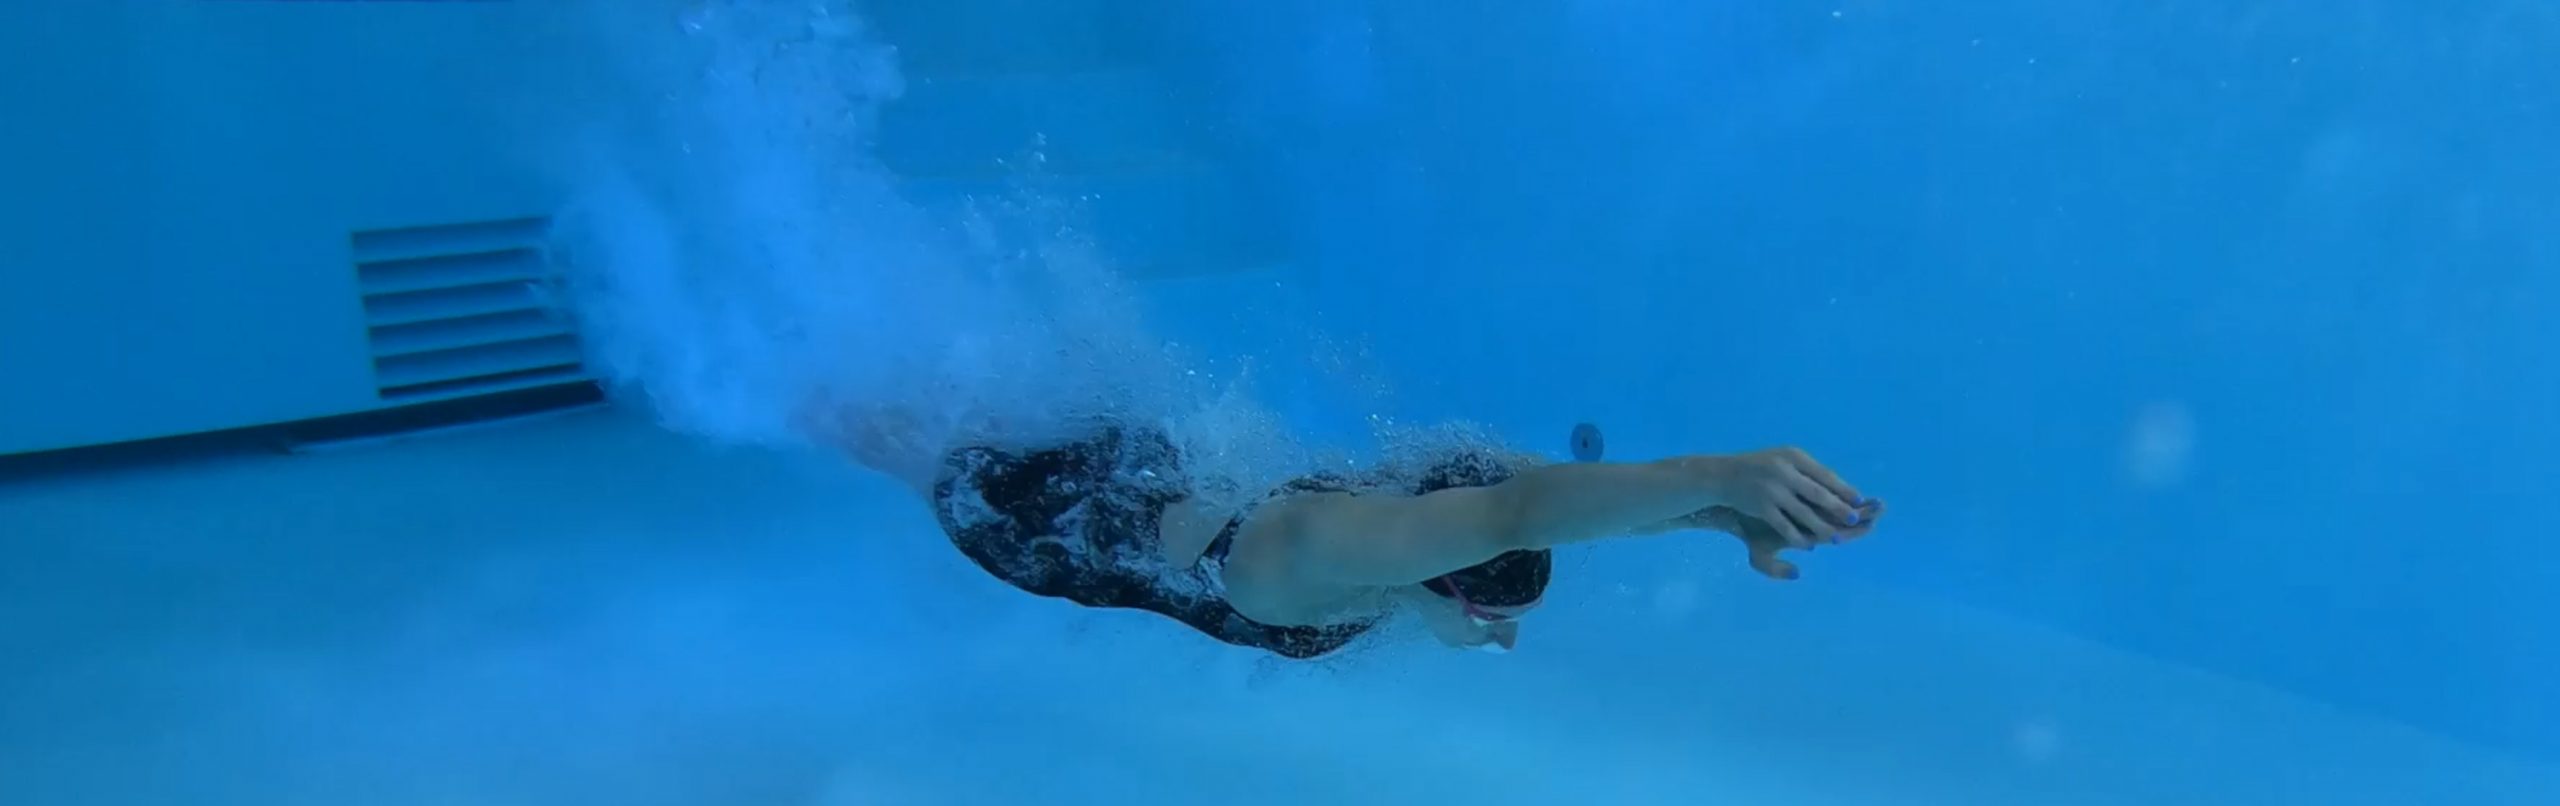 Kopfspung Leistungsschwimmer im Strom der Swim-Speed